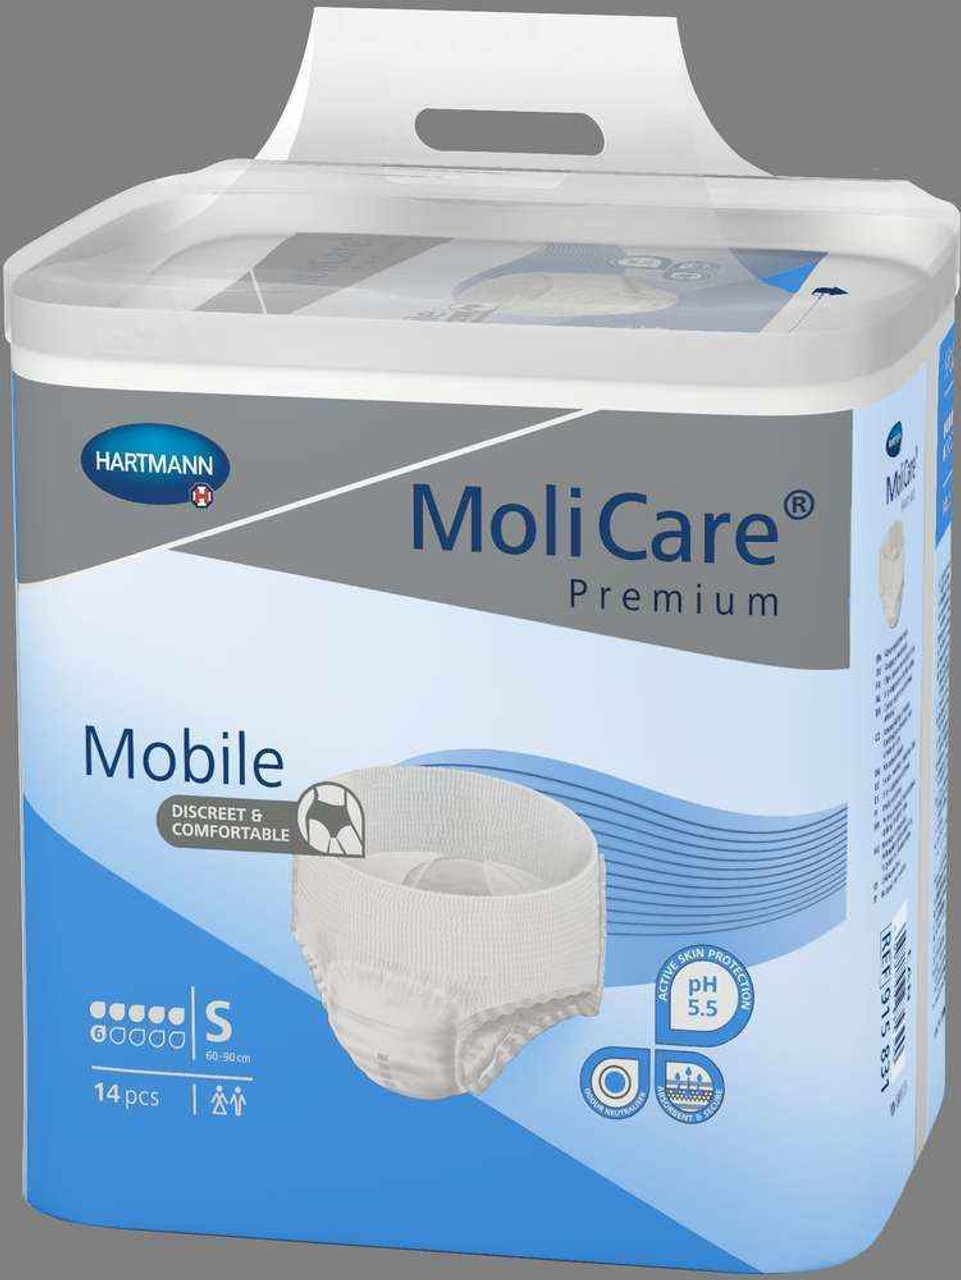 Molicare Premium Mobile 6D Large